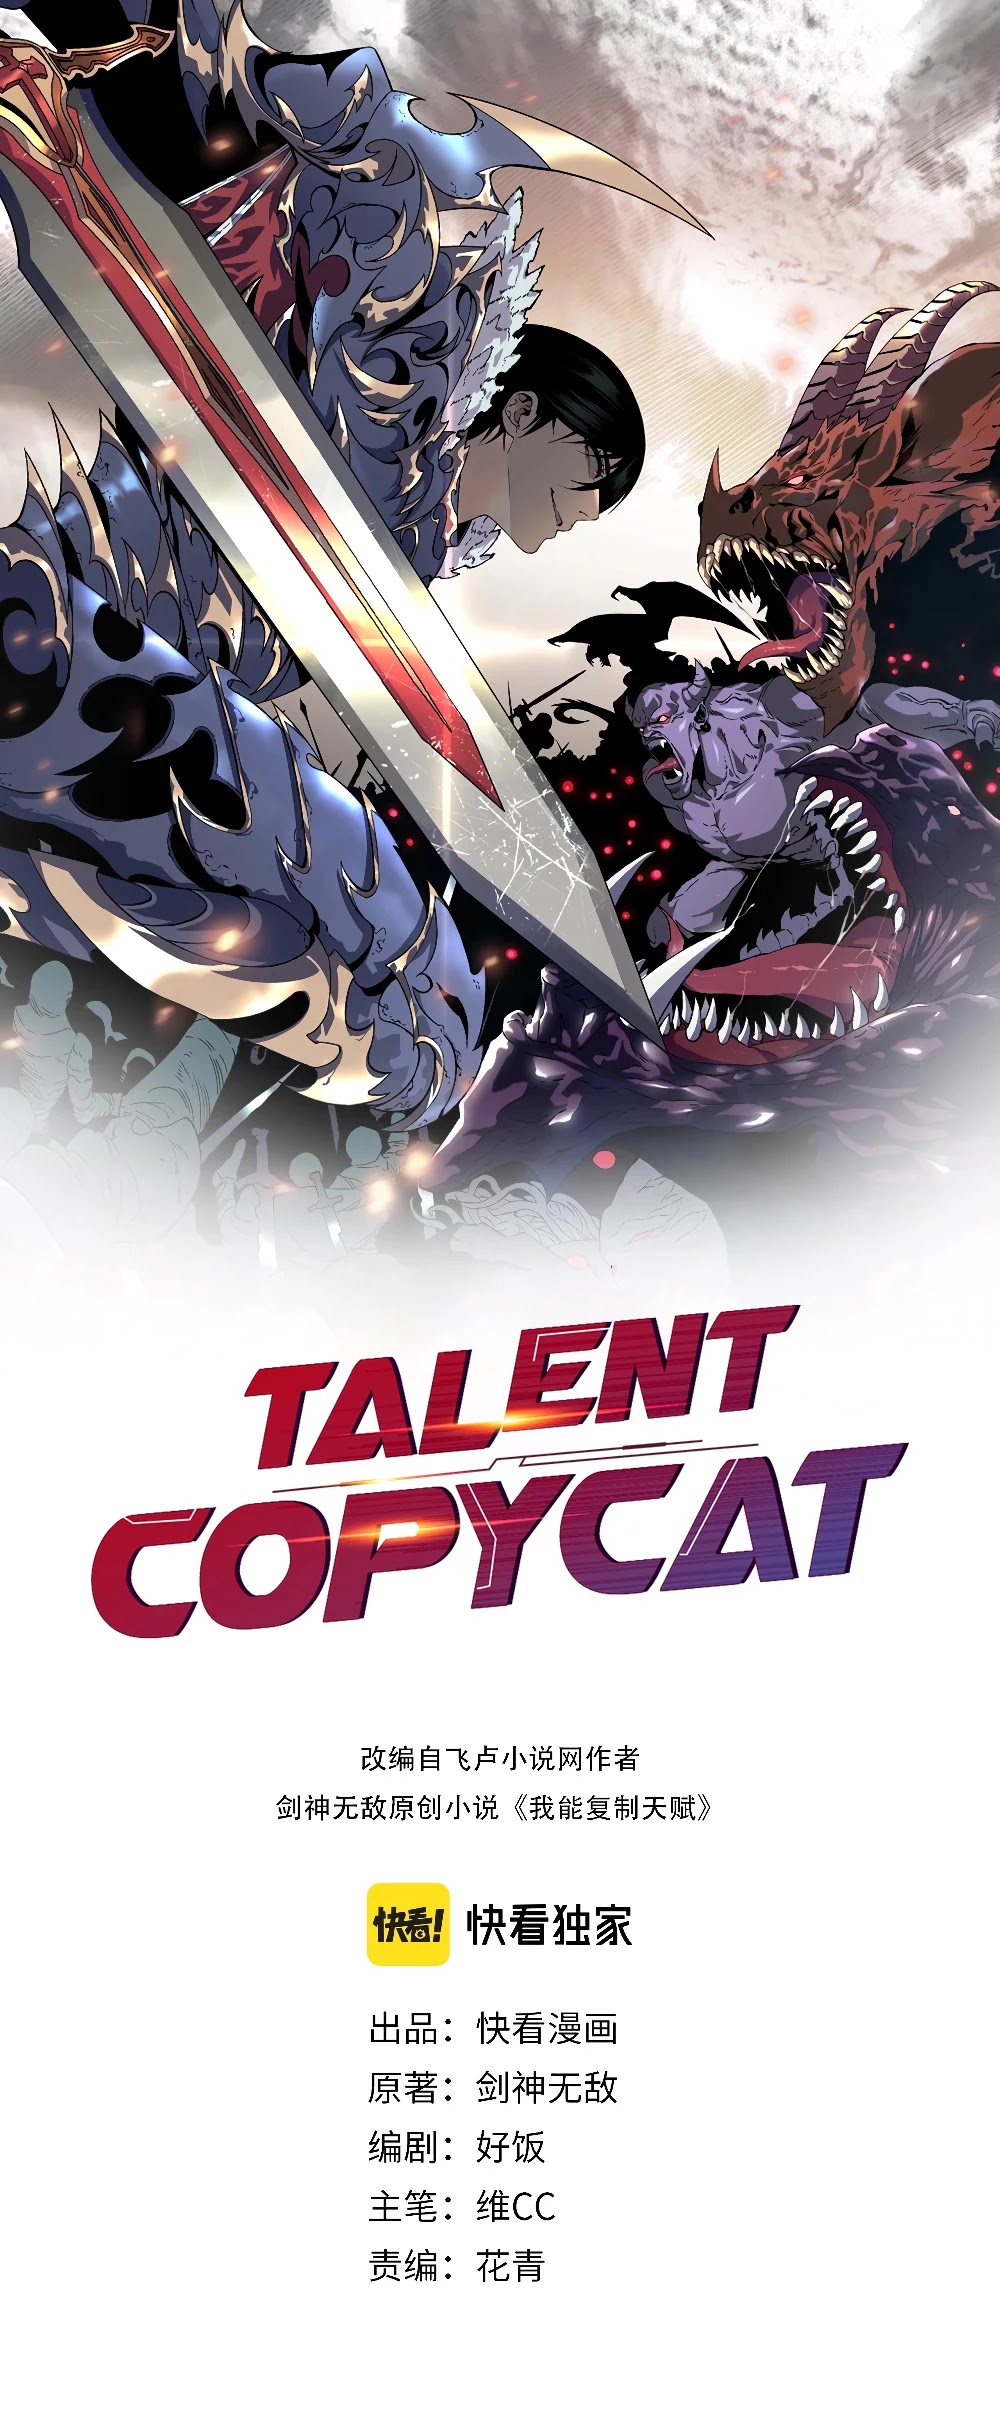 Talent Copycat - Page 2